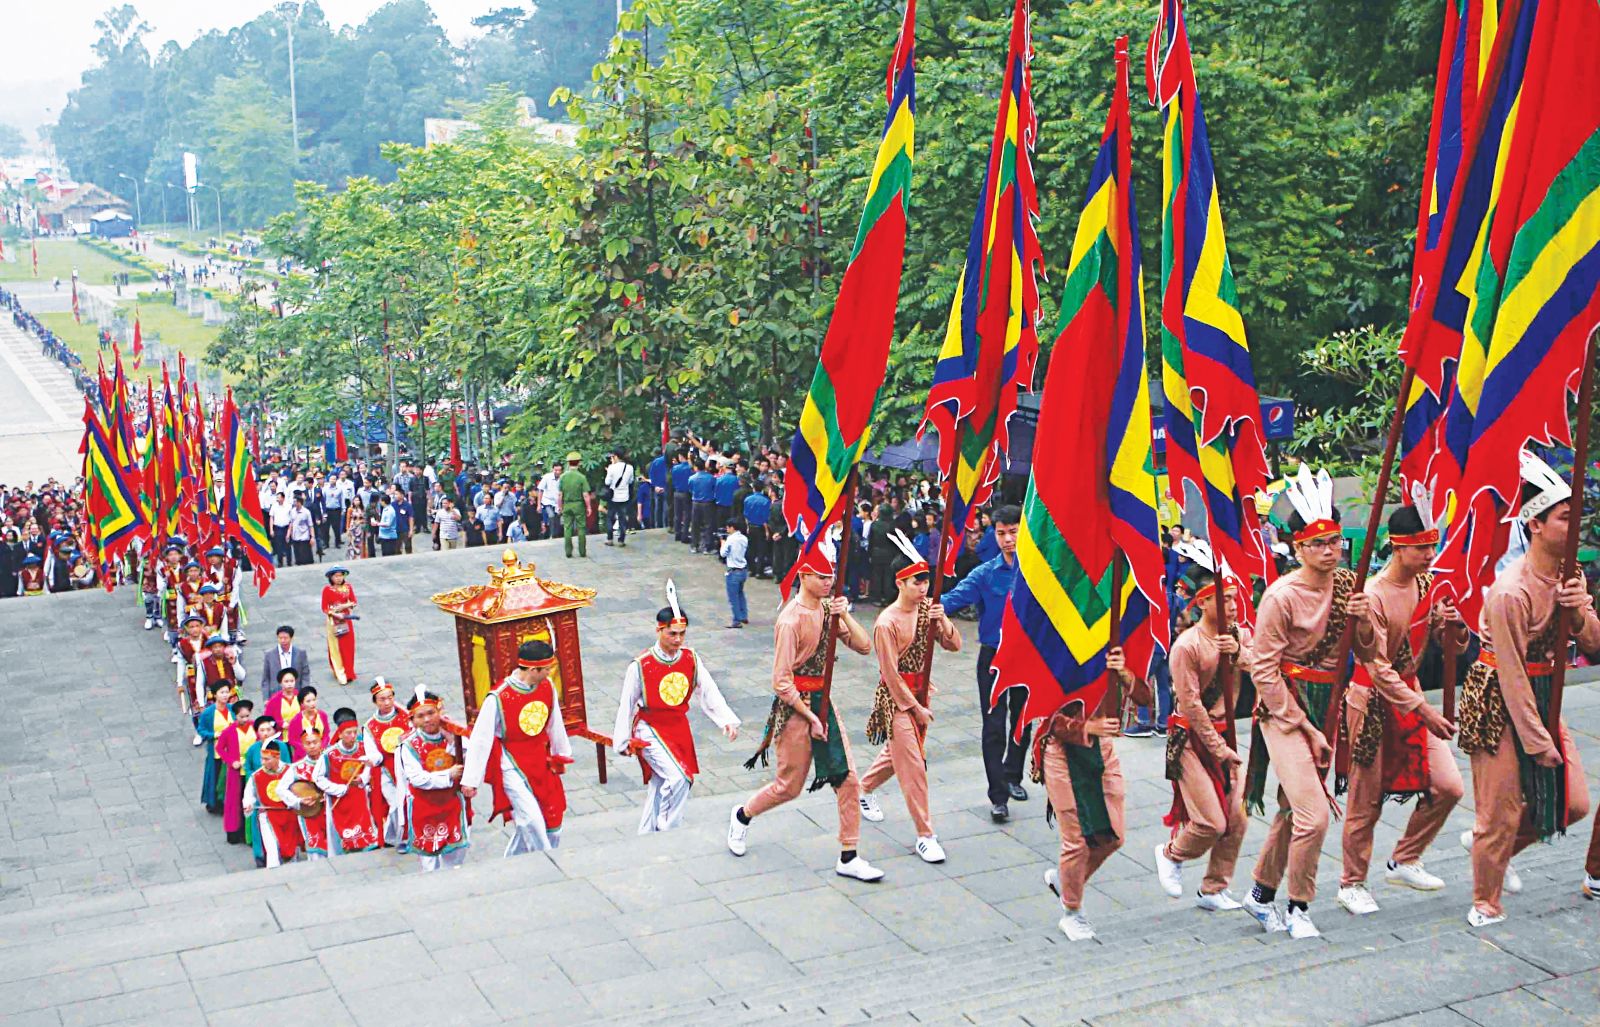 Đoàn dâng hương từ sân trung tâm lễ hội lên Đền Thượng. Ảnh: THANH TÙNG - TTXVN